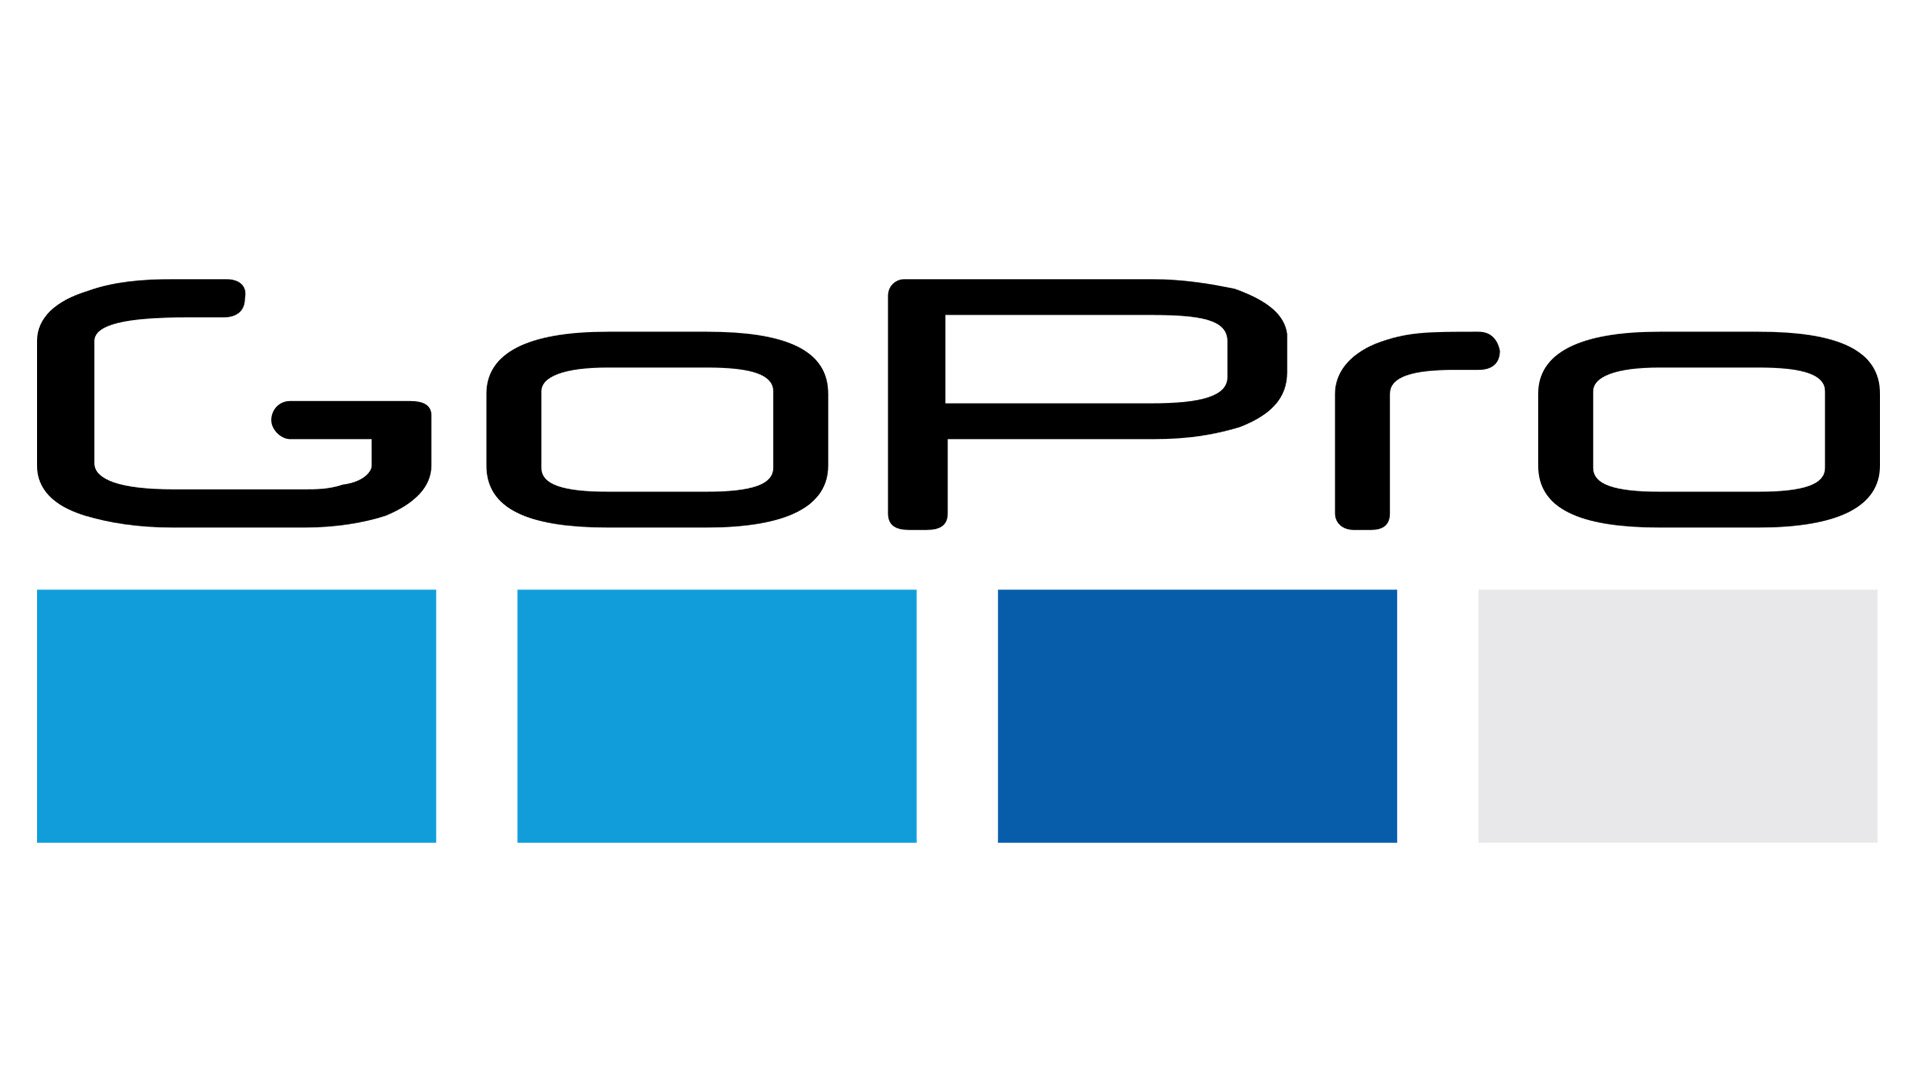 gopro hero logo